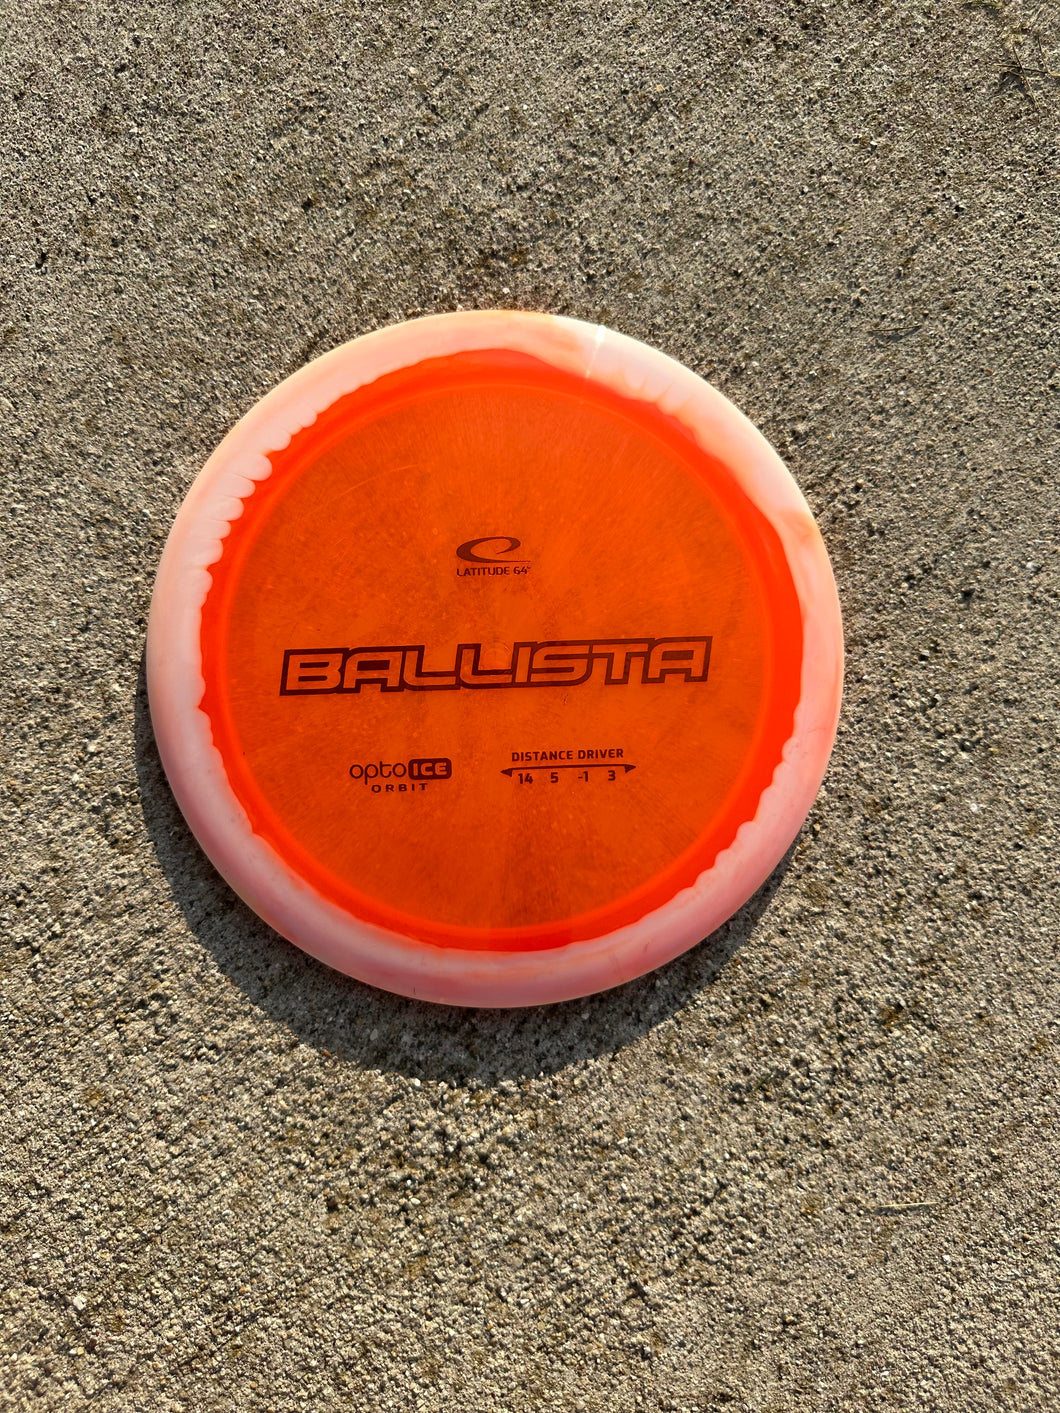 Latitude 64 Ballista Distance Driver 174g orange